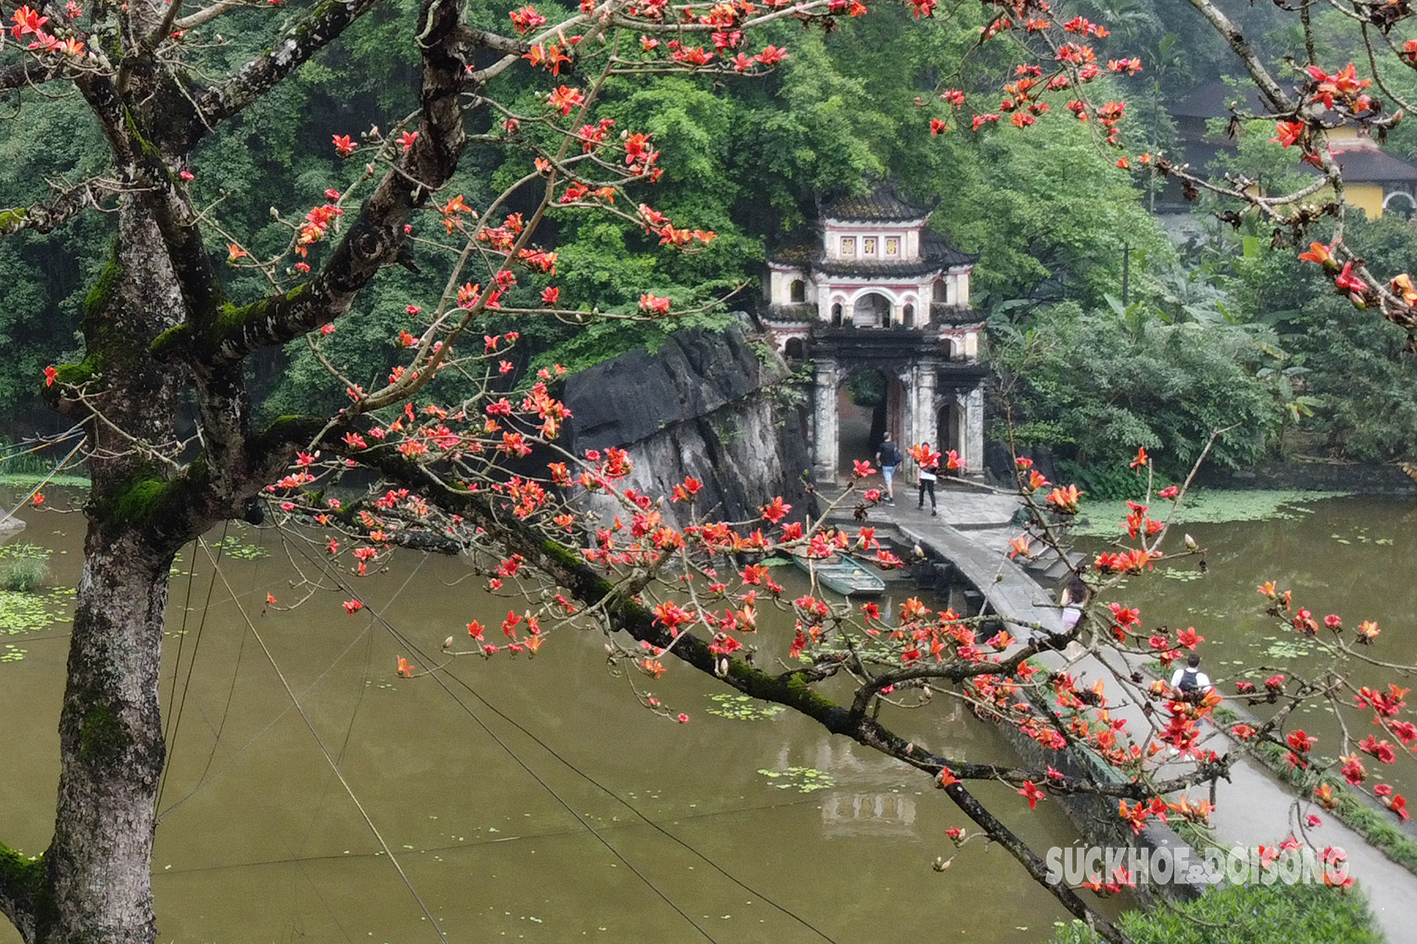 Mê mẩn sắc đỏ của cây gạo trăm tuổi bên mái chùa rêu phong ở Ninh Bình- Ảnh 7.